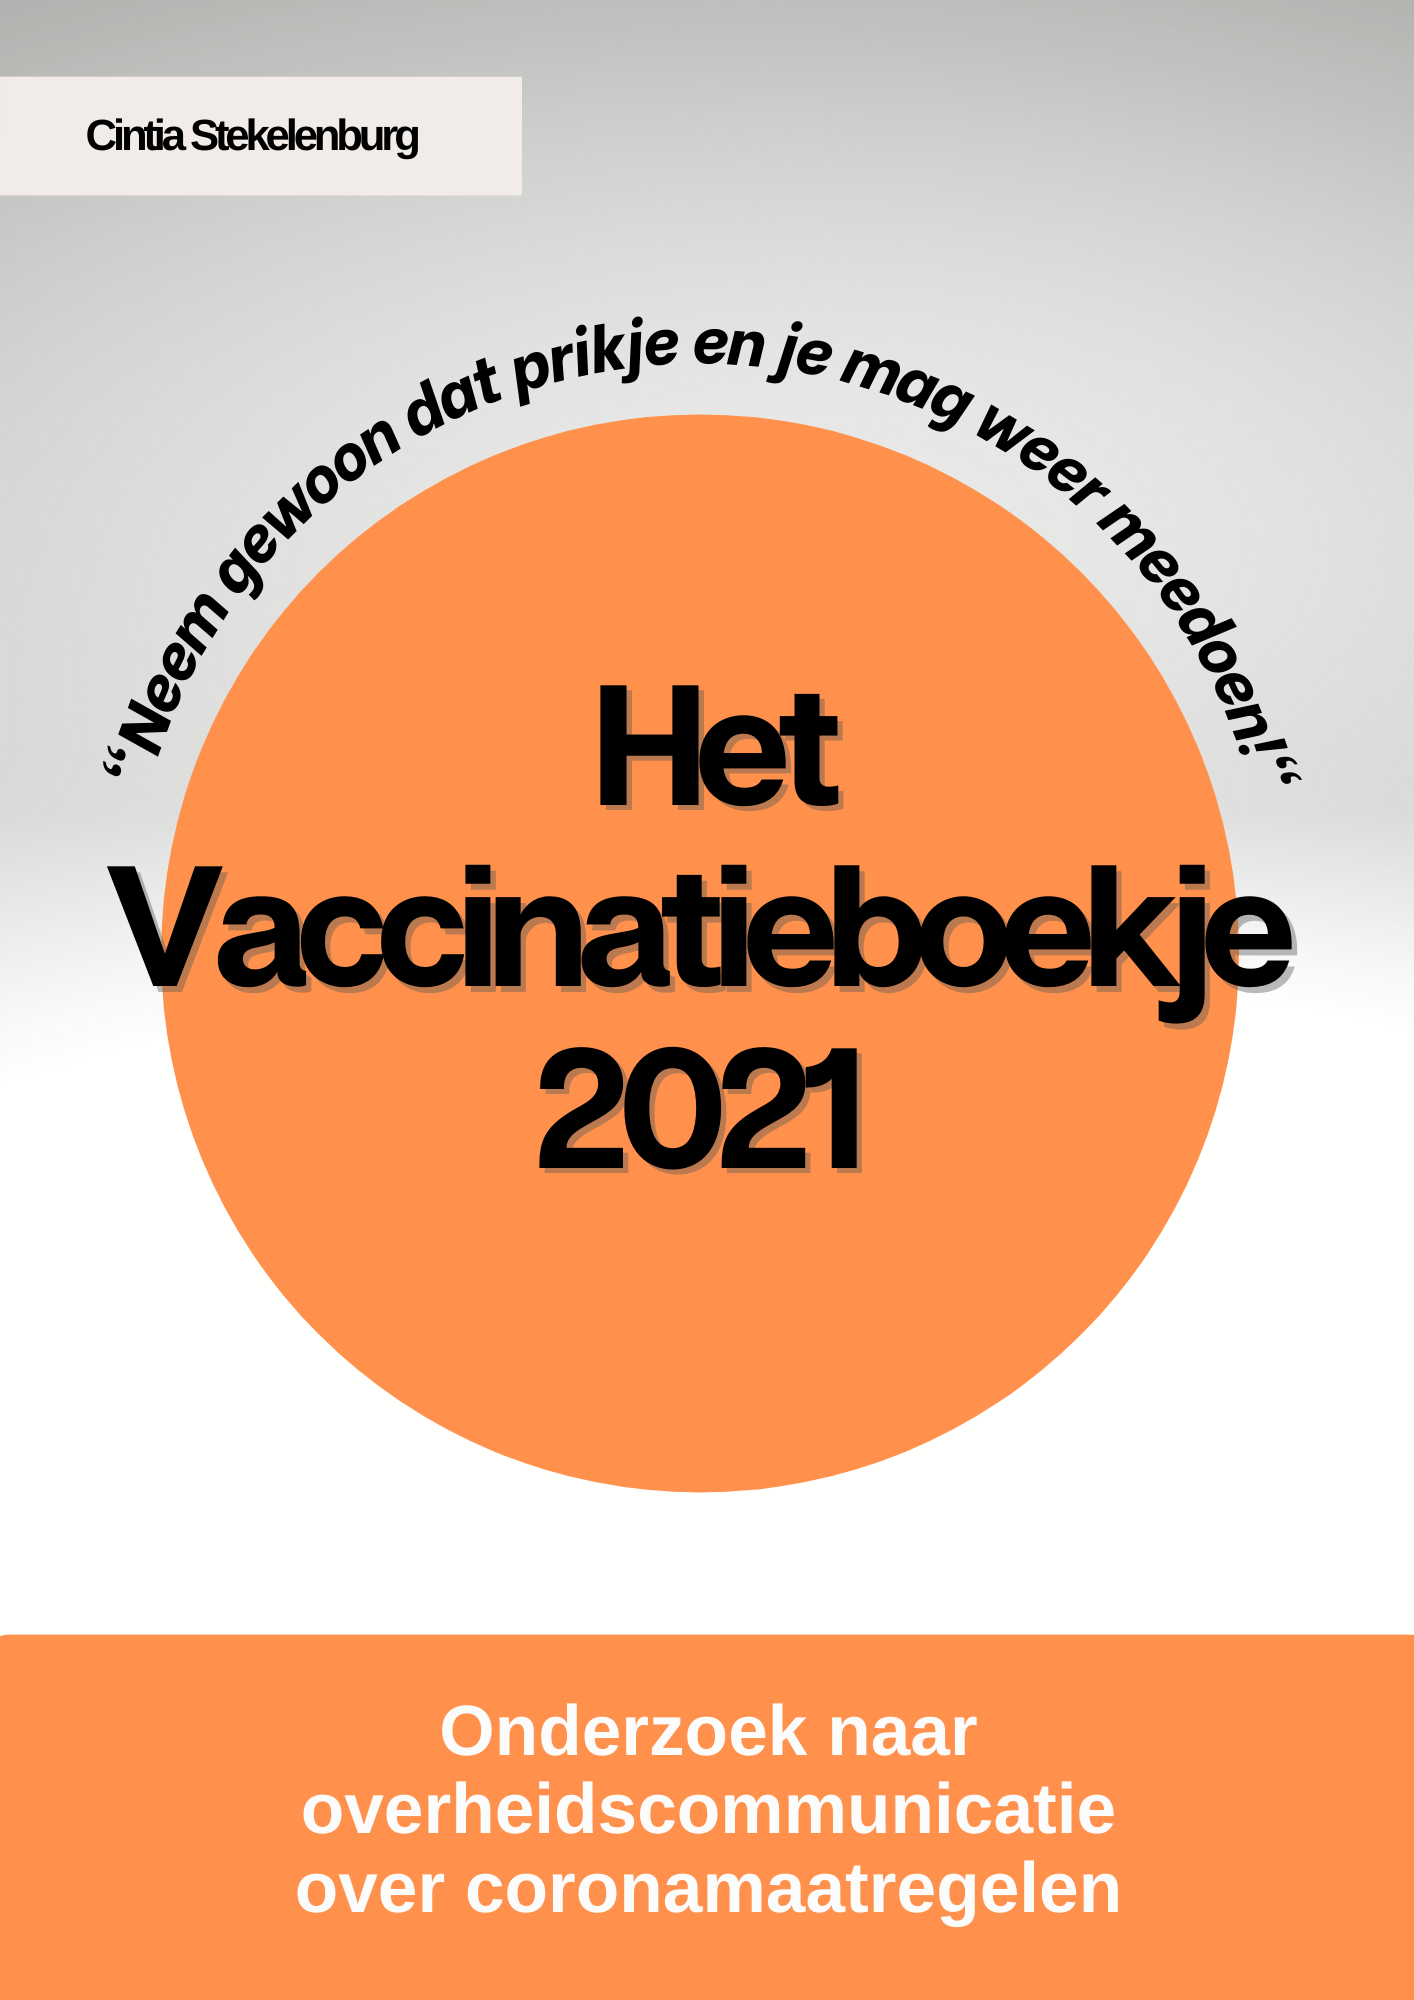 Het Vaccinatieboekje 2021 komt eraan!